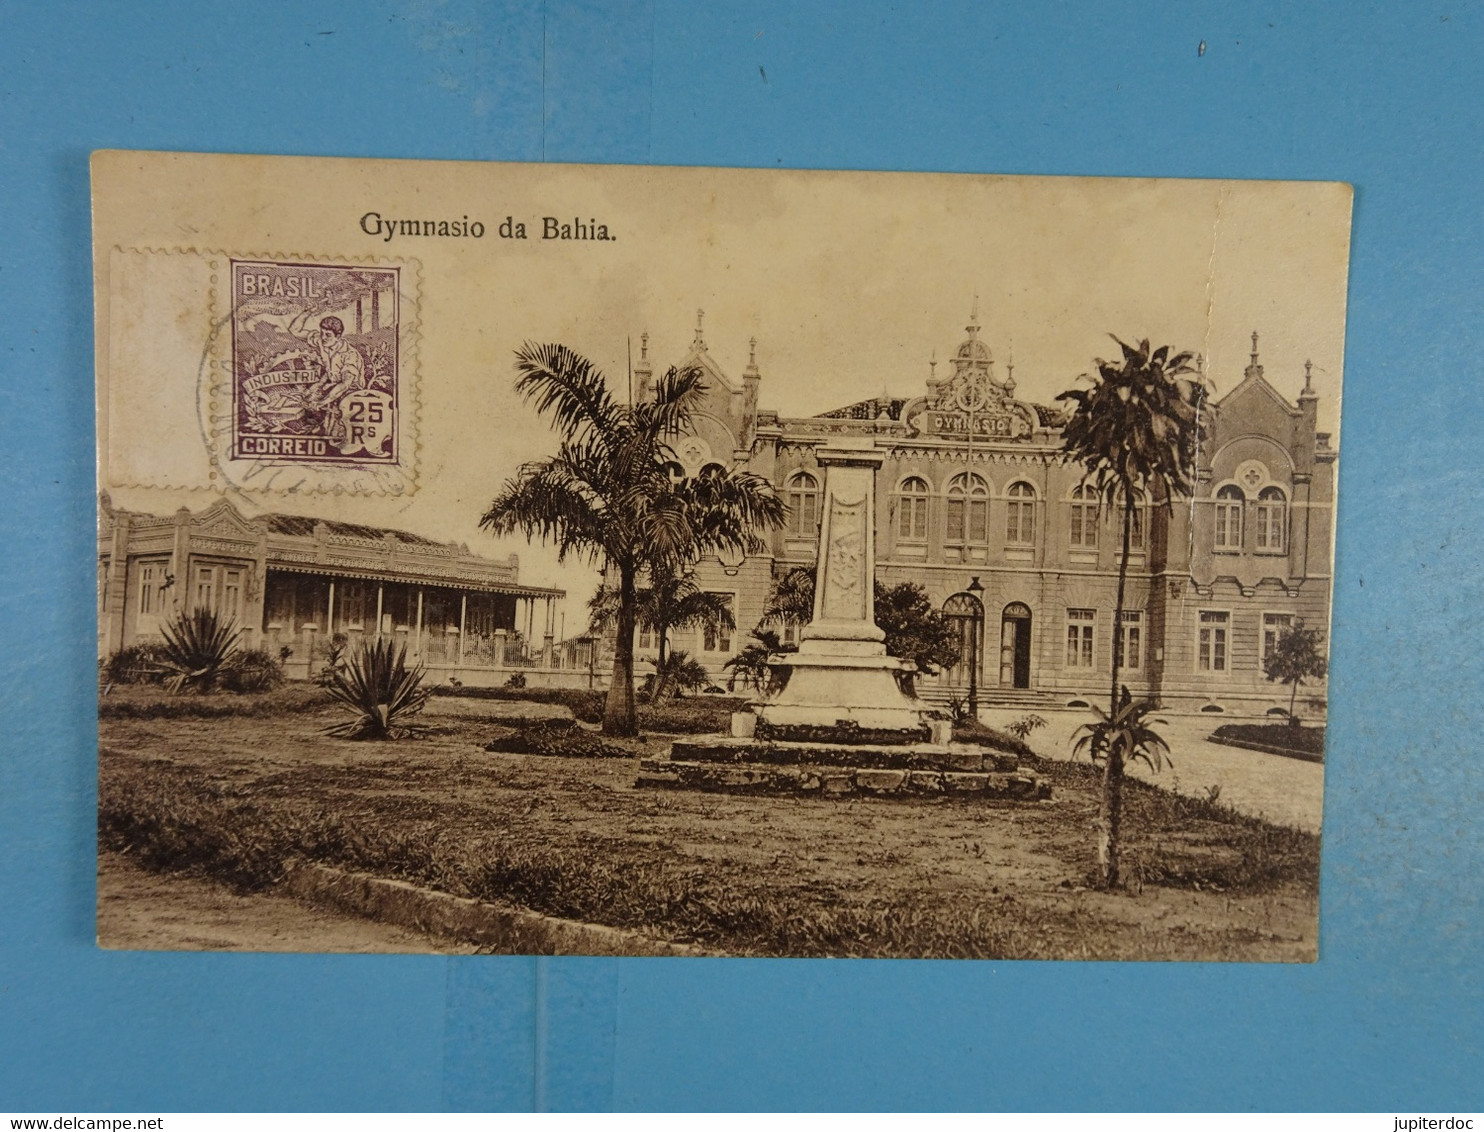 Gymnasio Da Bahia - Salvador De Bahia